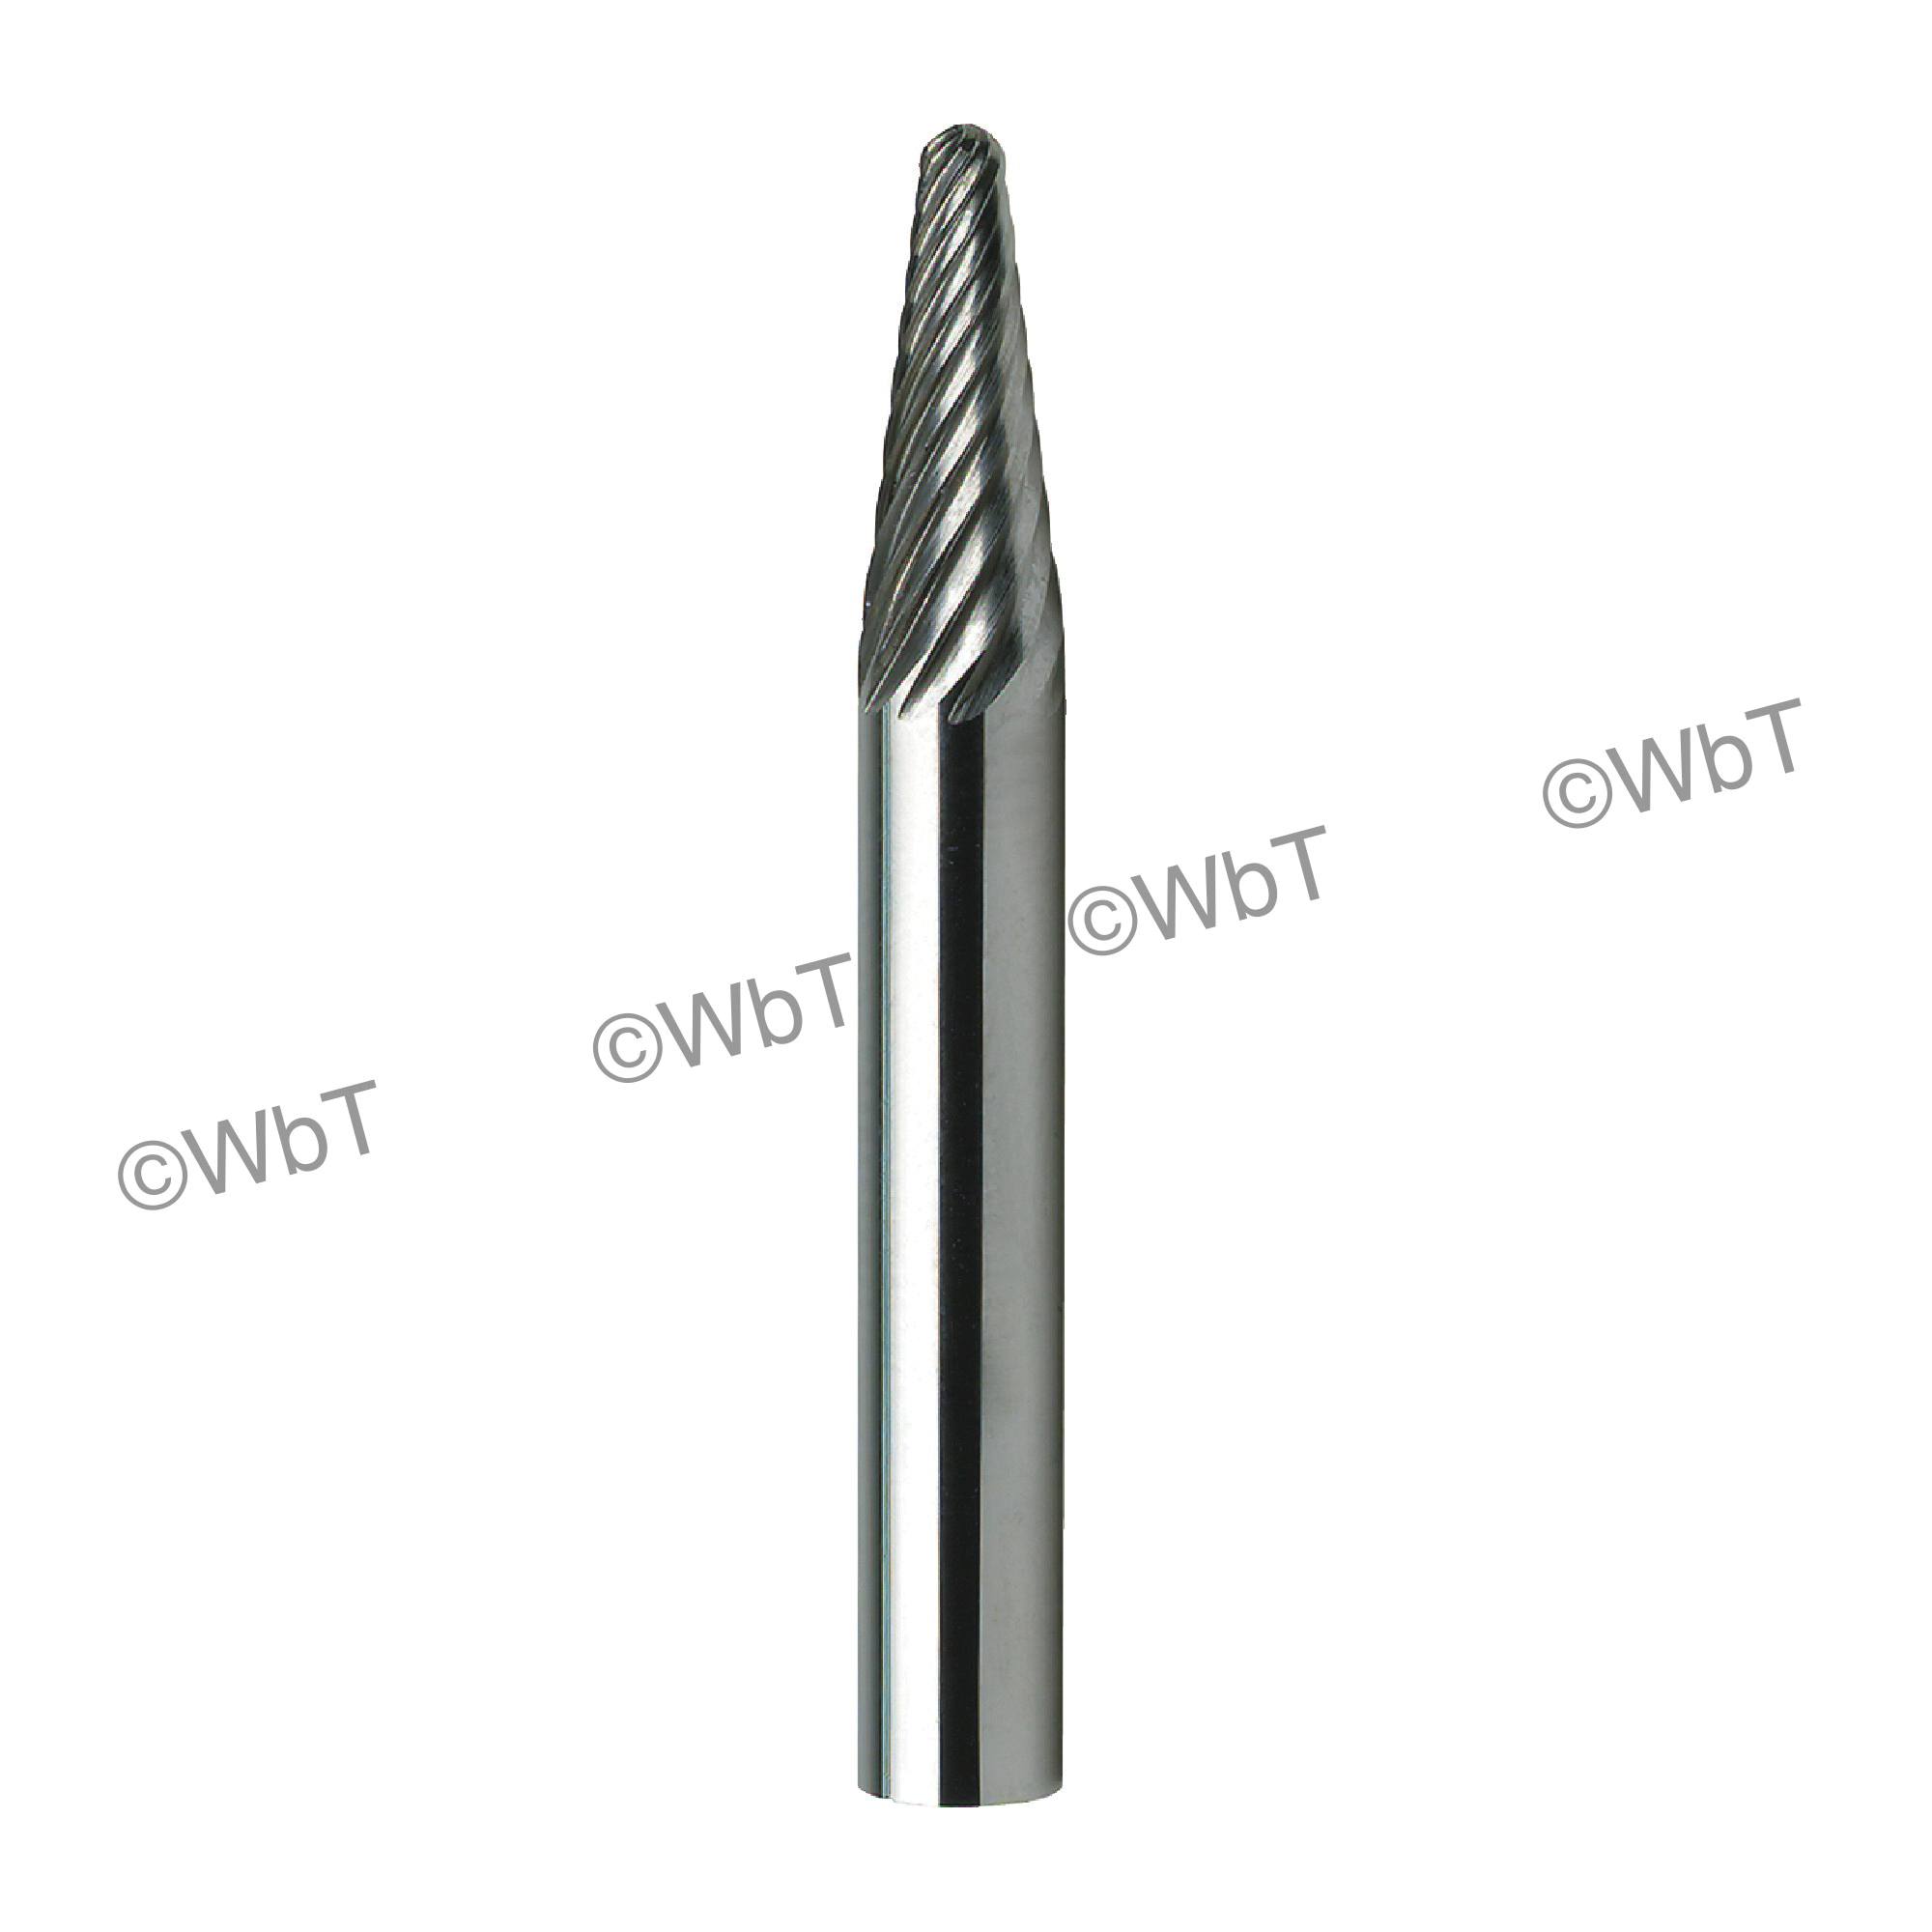 TTC 20-016-021 General Purpose Carbide Burr, Flame (Shape SH) Head, 3/16 in Dia Head, 3/8 in L of Cut, Single Cut